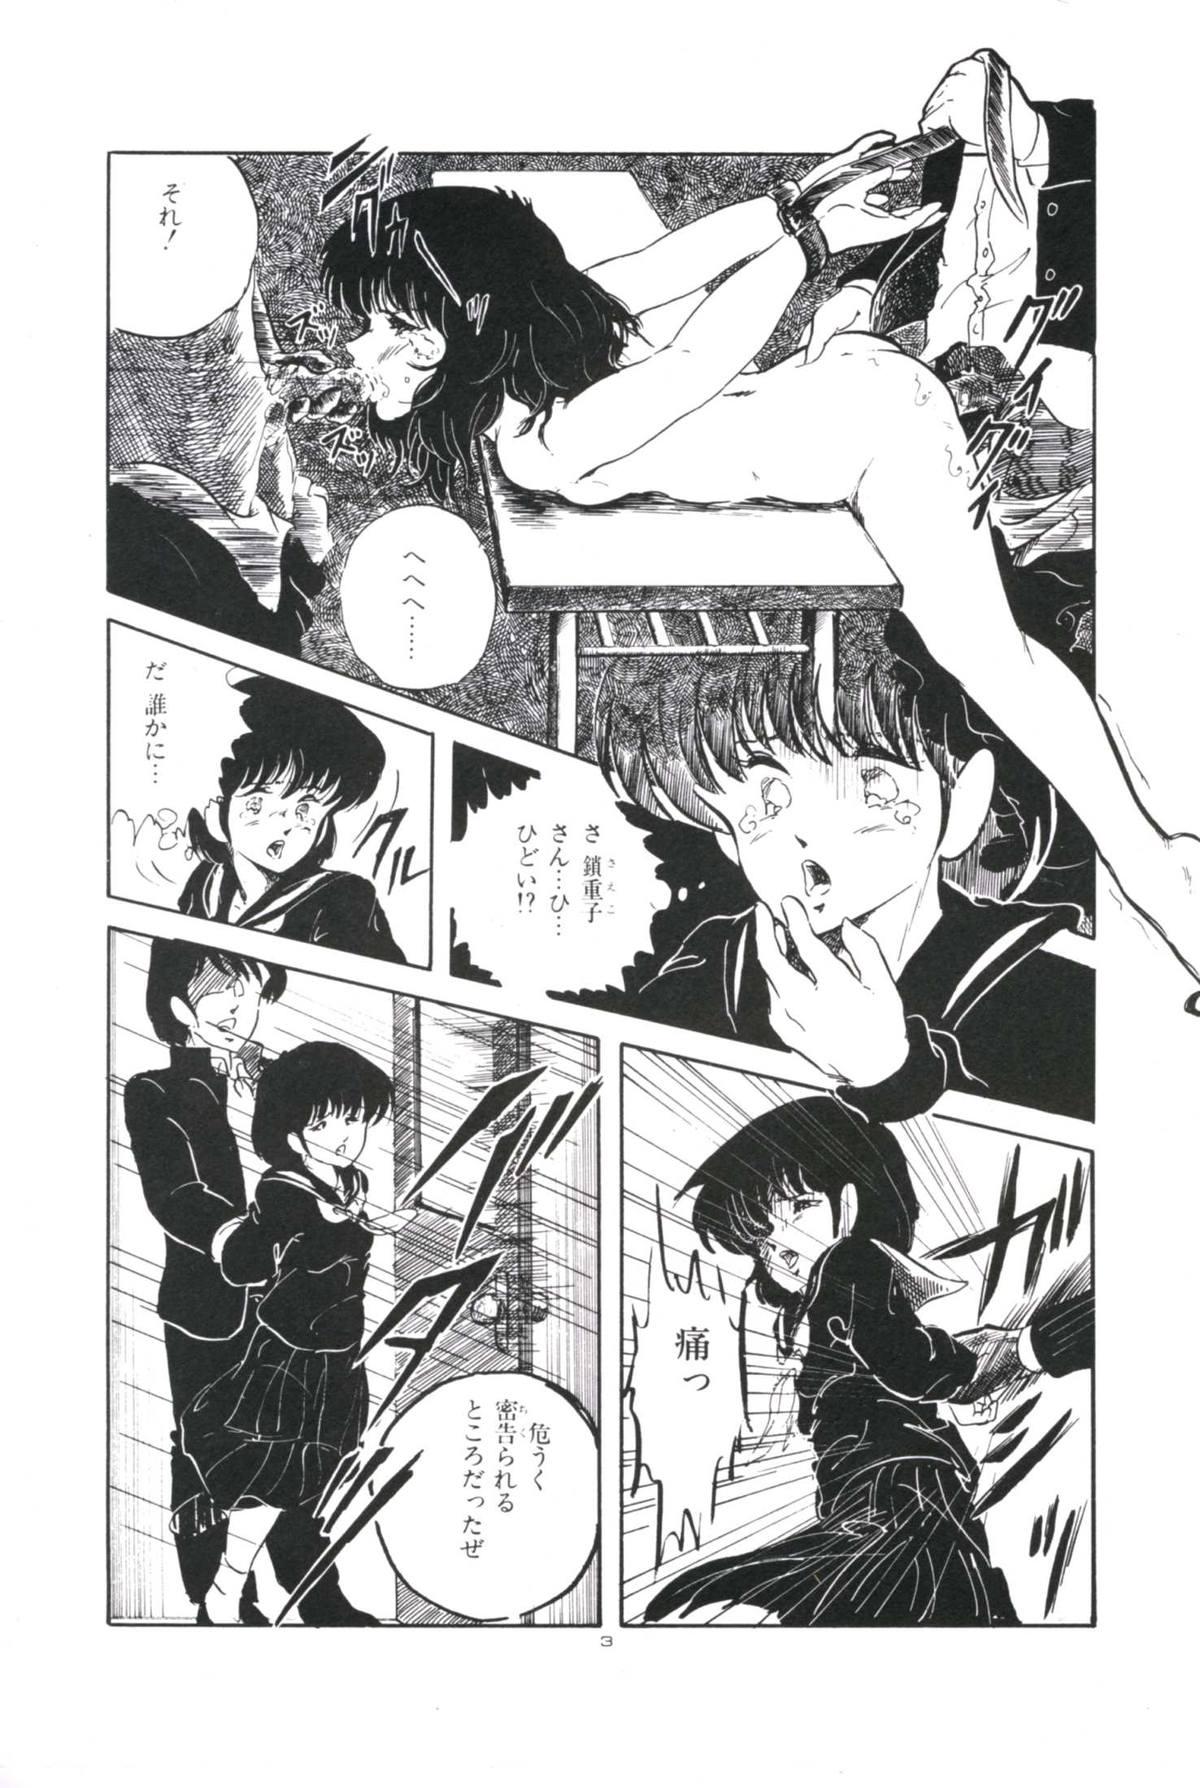 Pussylicking Ikenai Yuugi Humiliation - Page 7